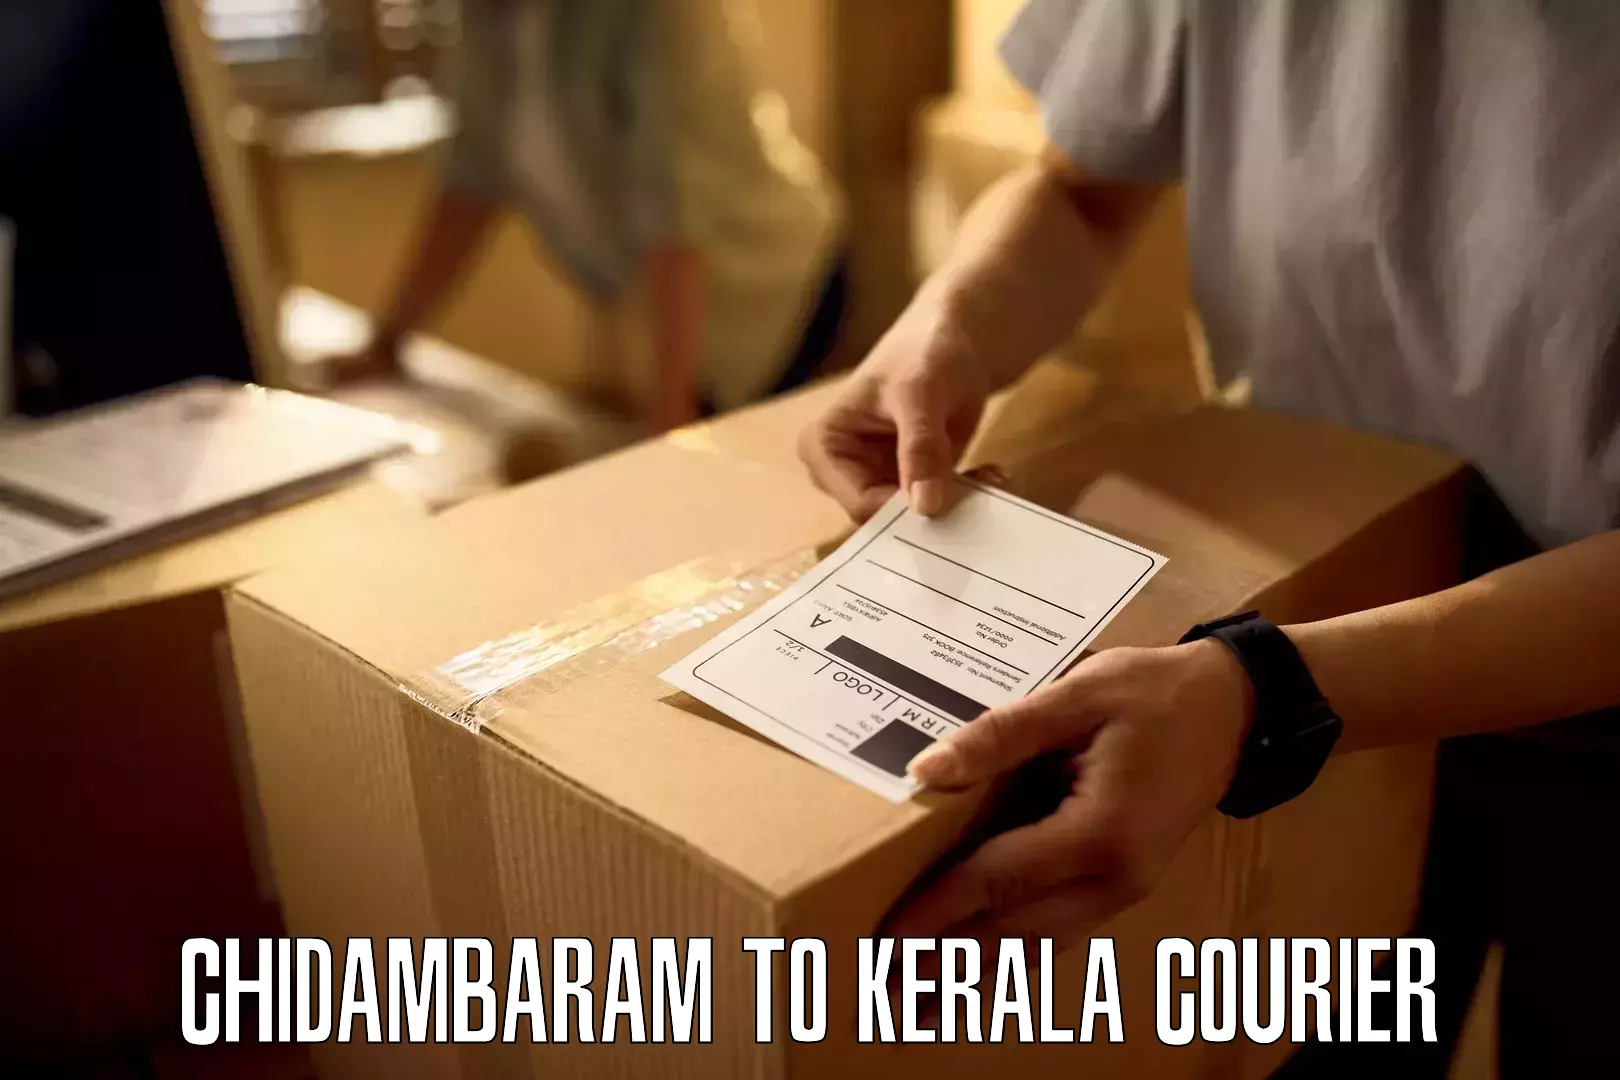 Urgent courier needs in Chidambaram to Thamarassery